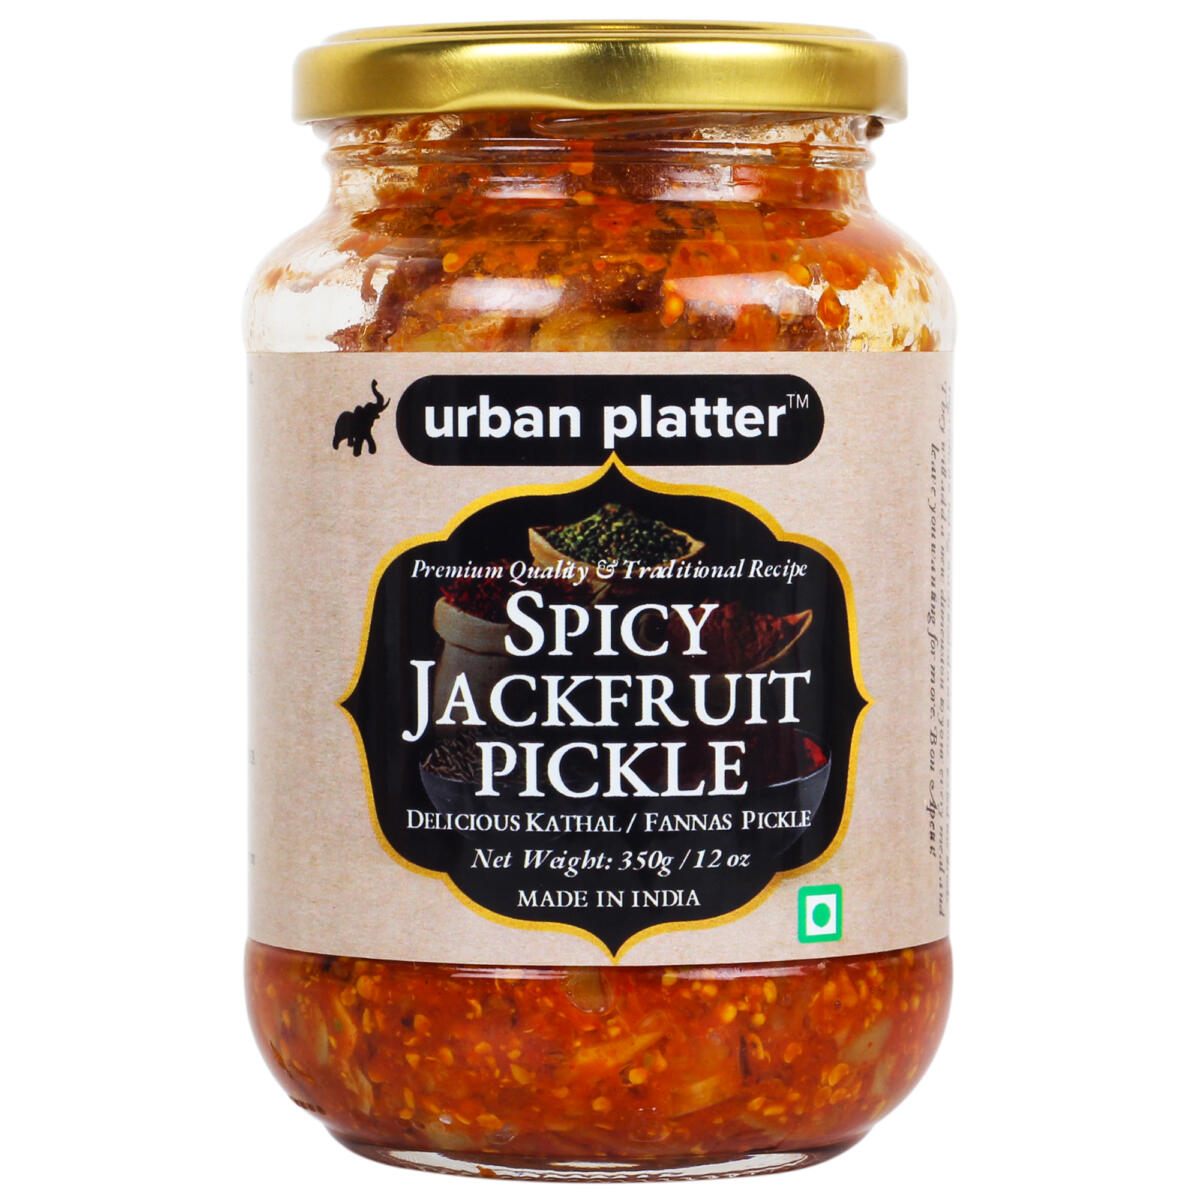 Urban Platter Spicy Jackfruit Pickle, 350g / 12oz [Premium Quality